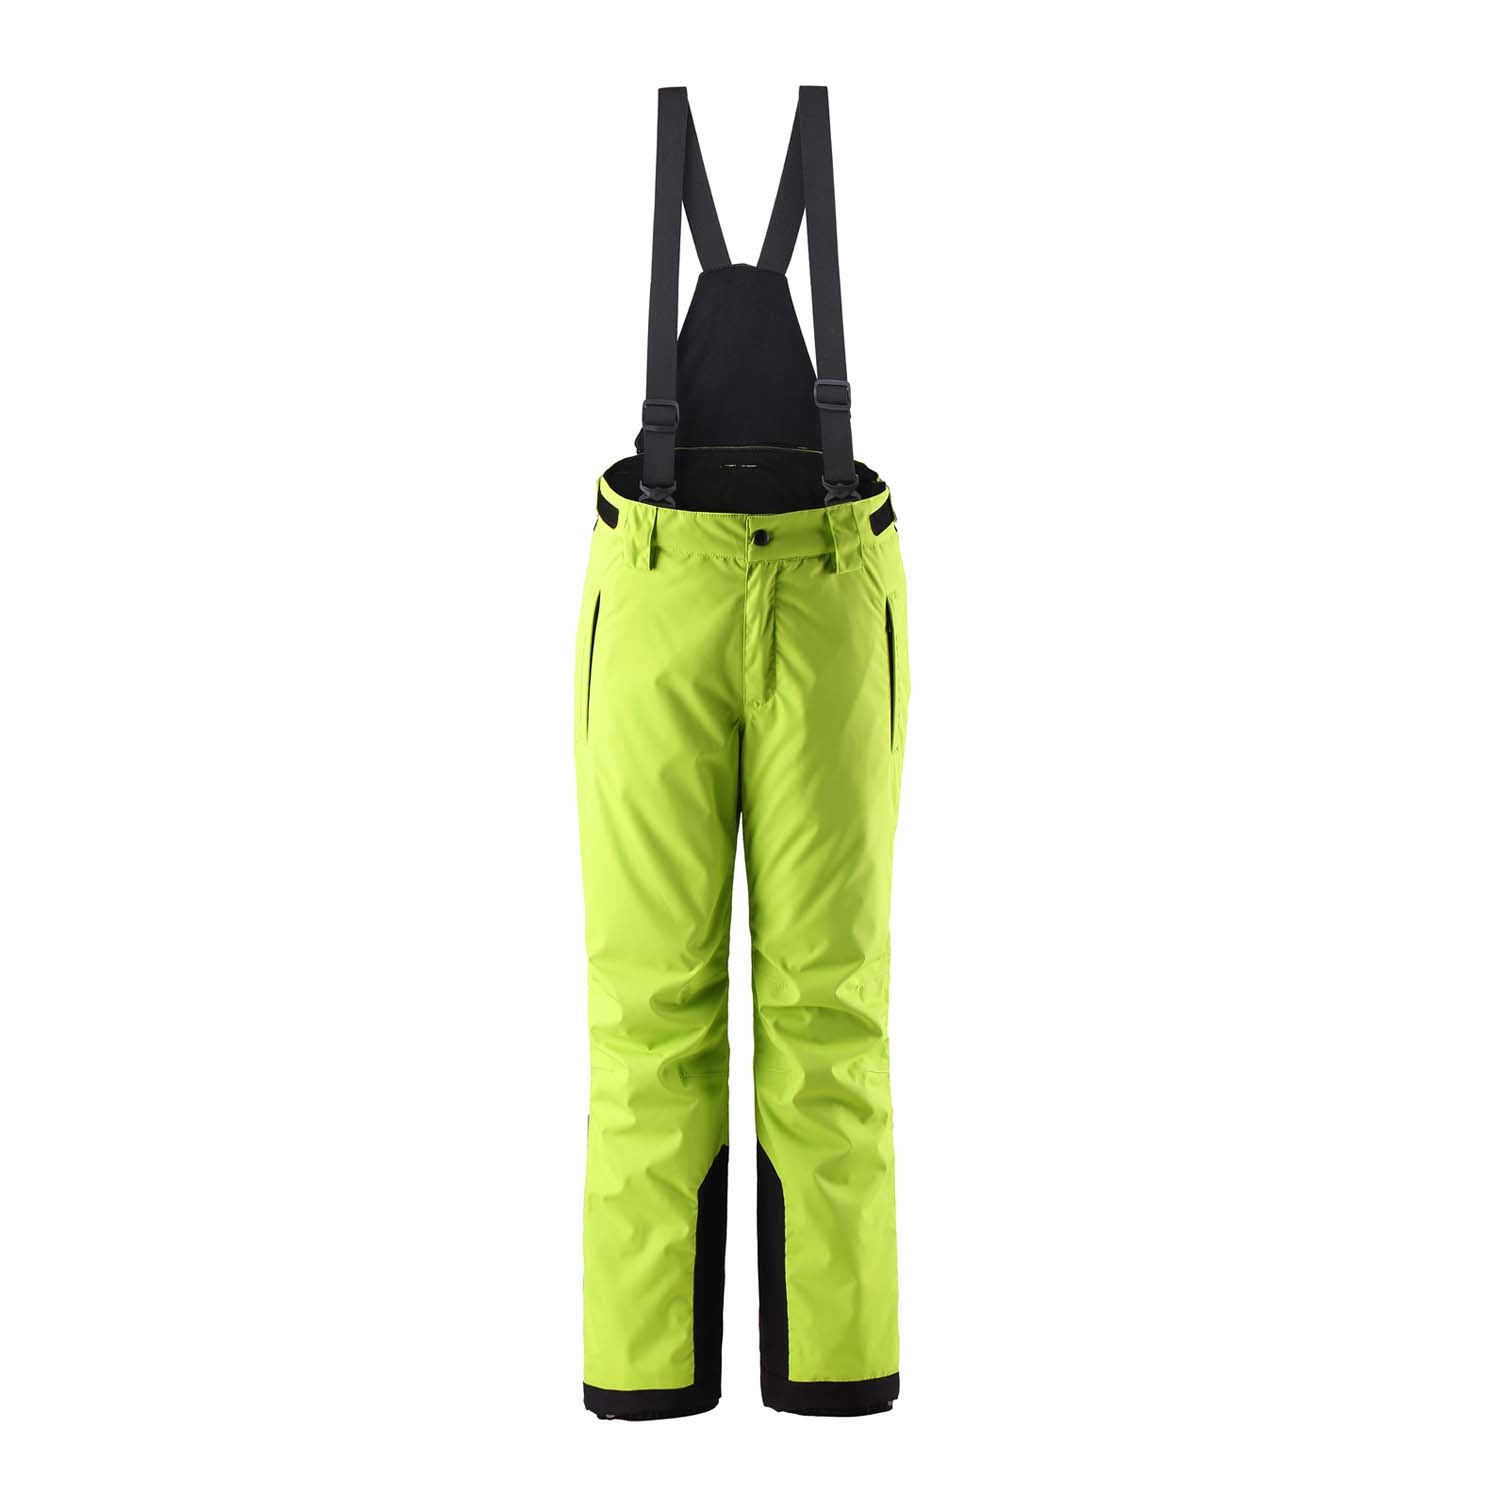 Reima Wingon Ski Pants Lime Green 2021